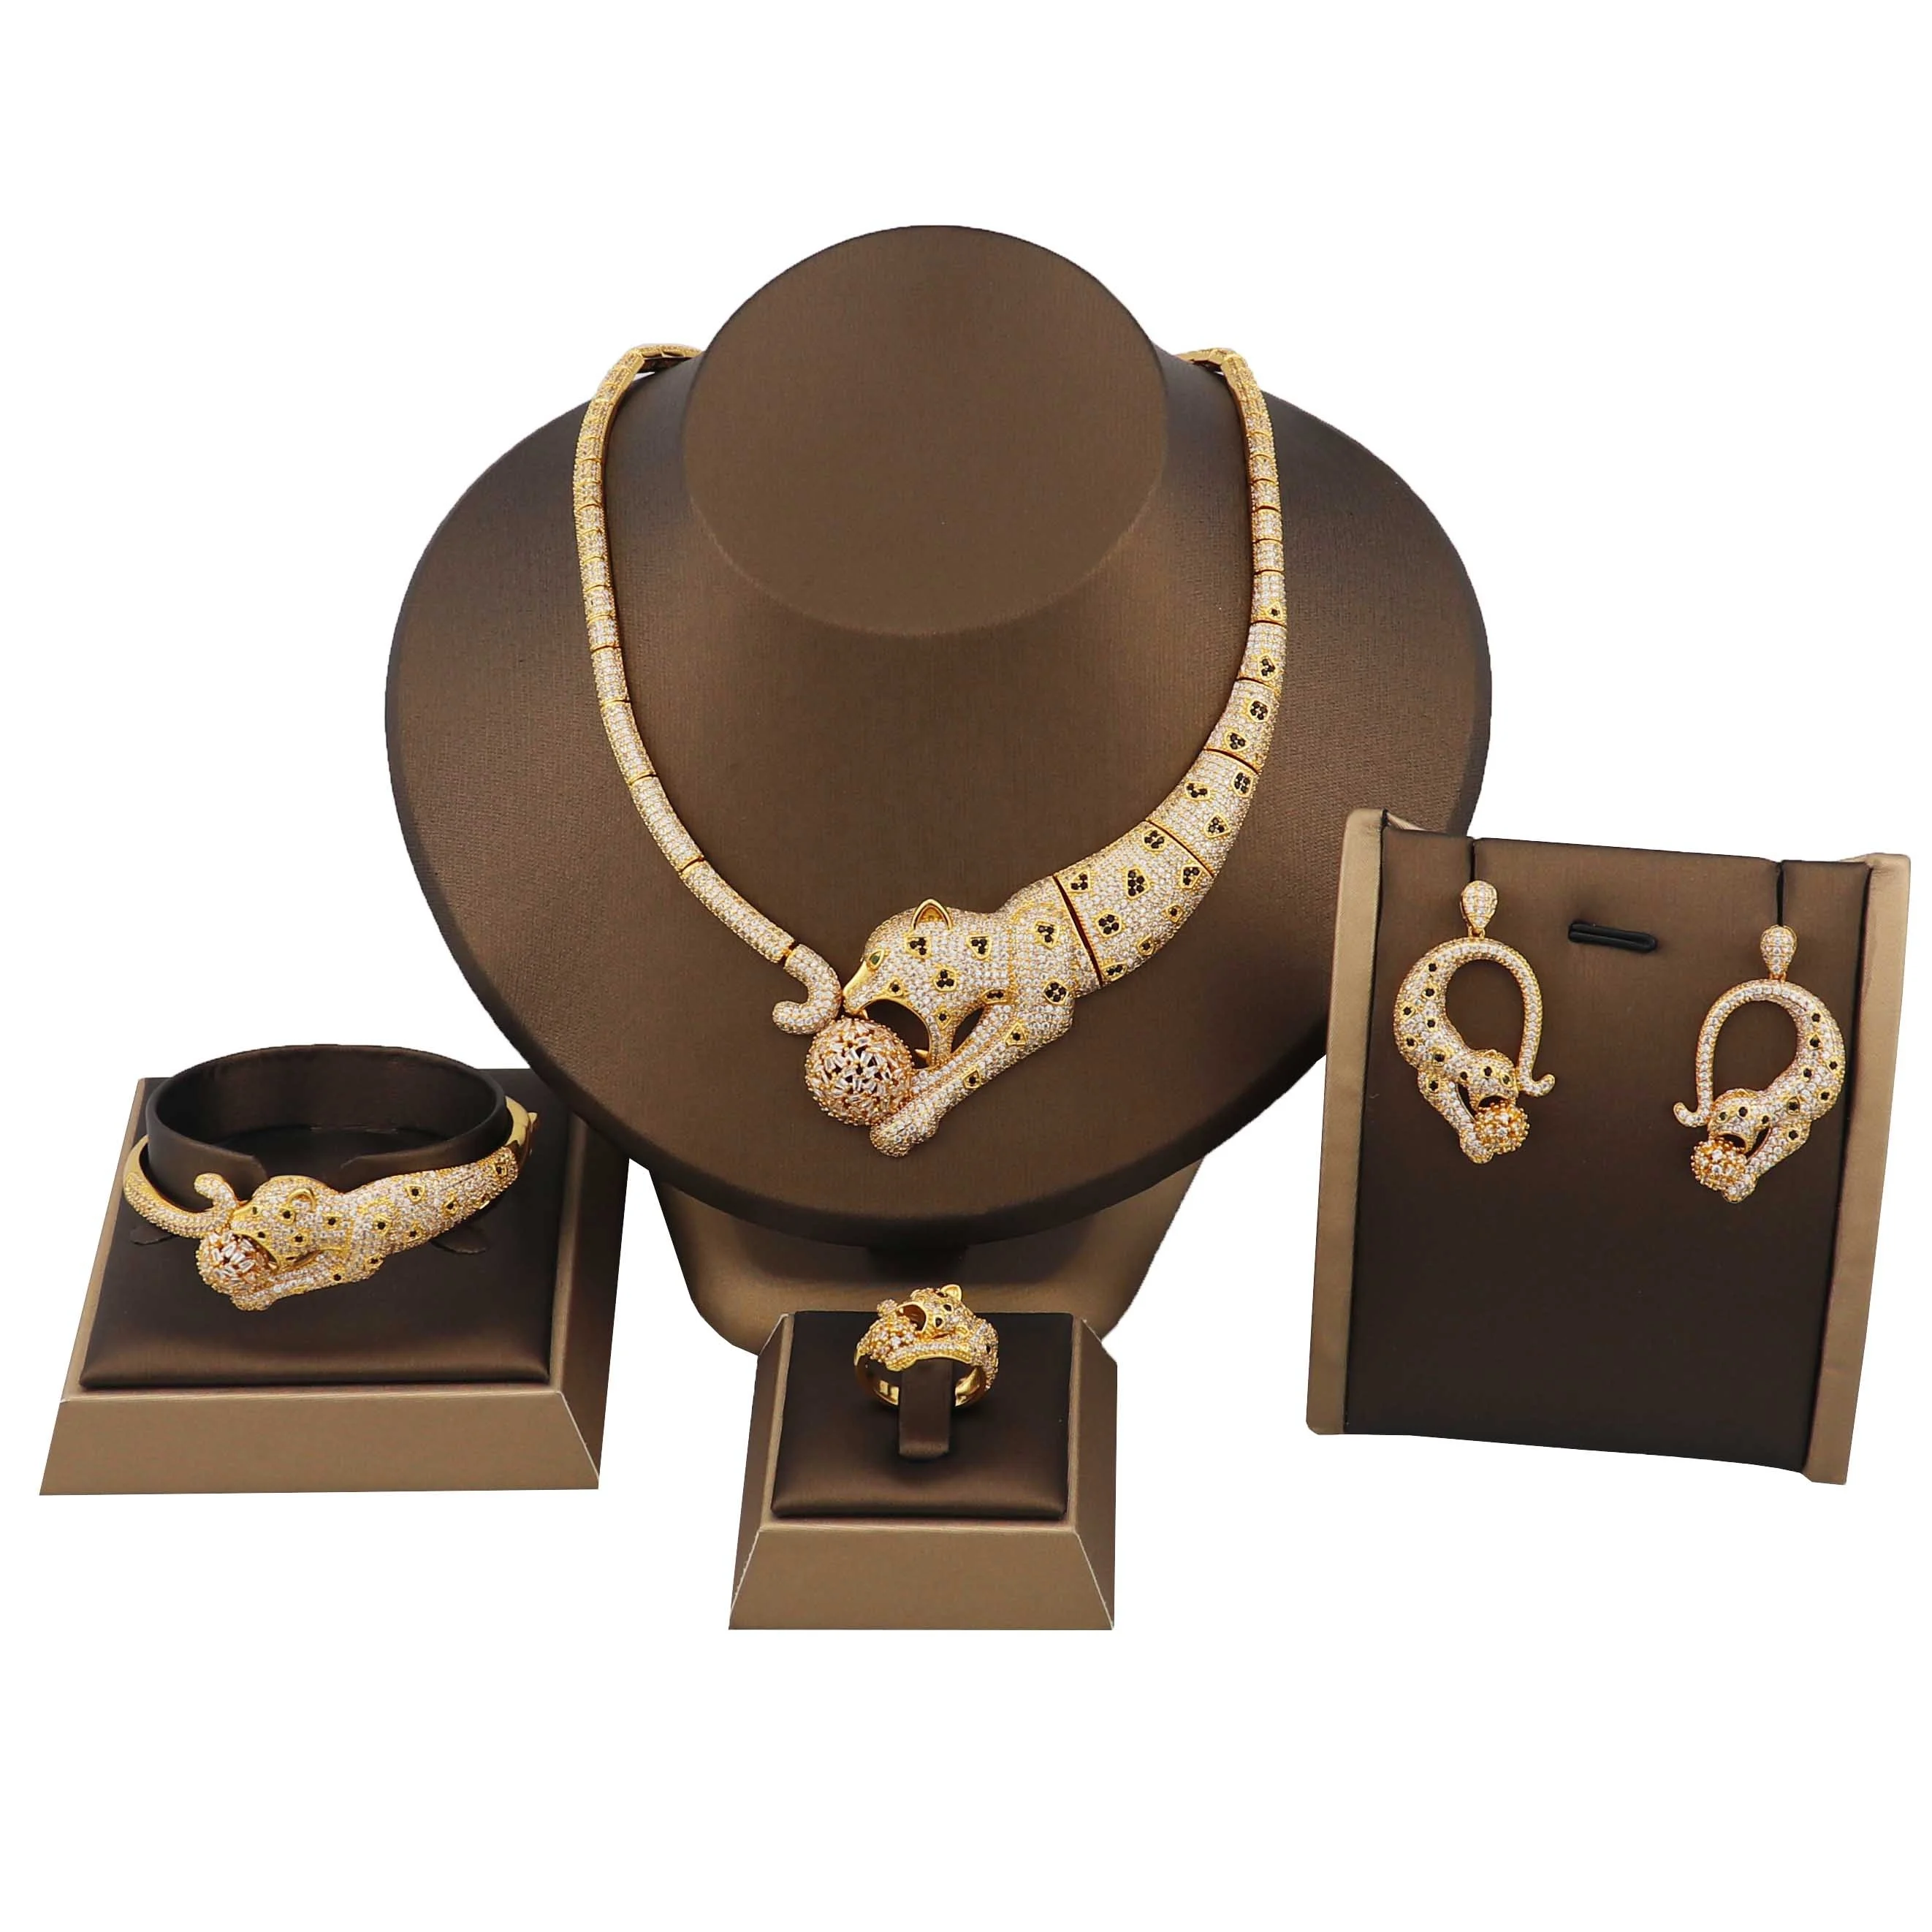 Women Jewelry Sets Necklace Bracelet Earring & Ring Set 18K Gold Plated Zircon 